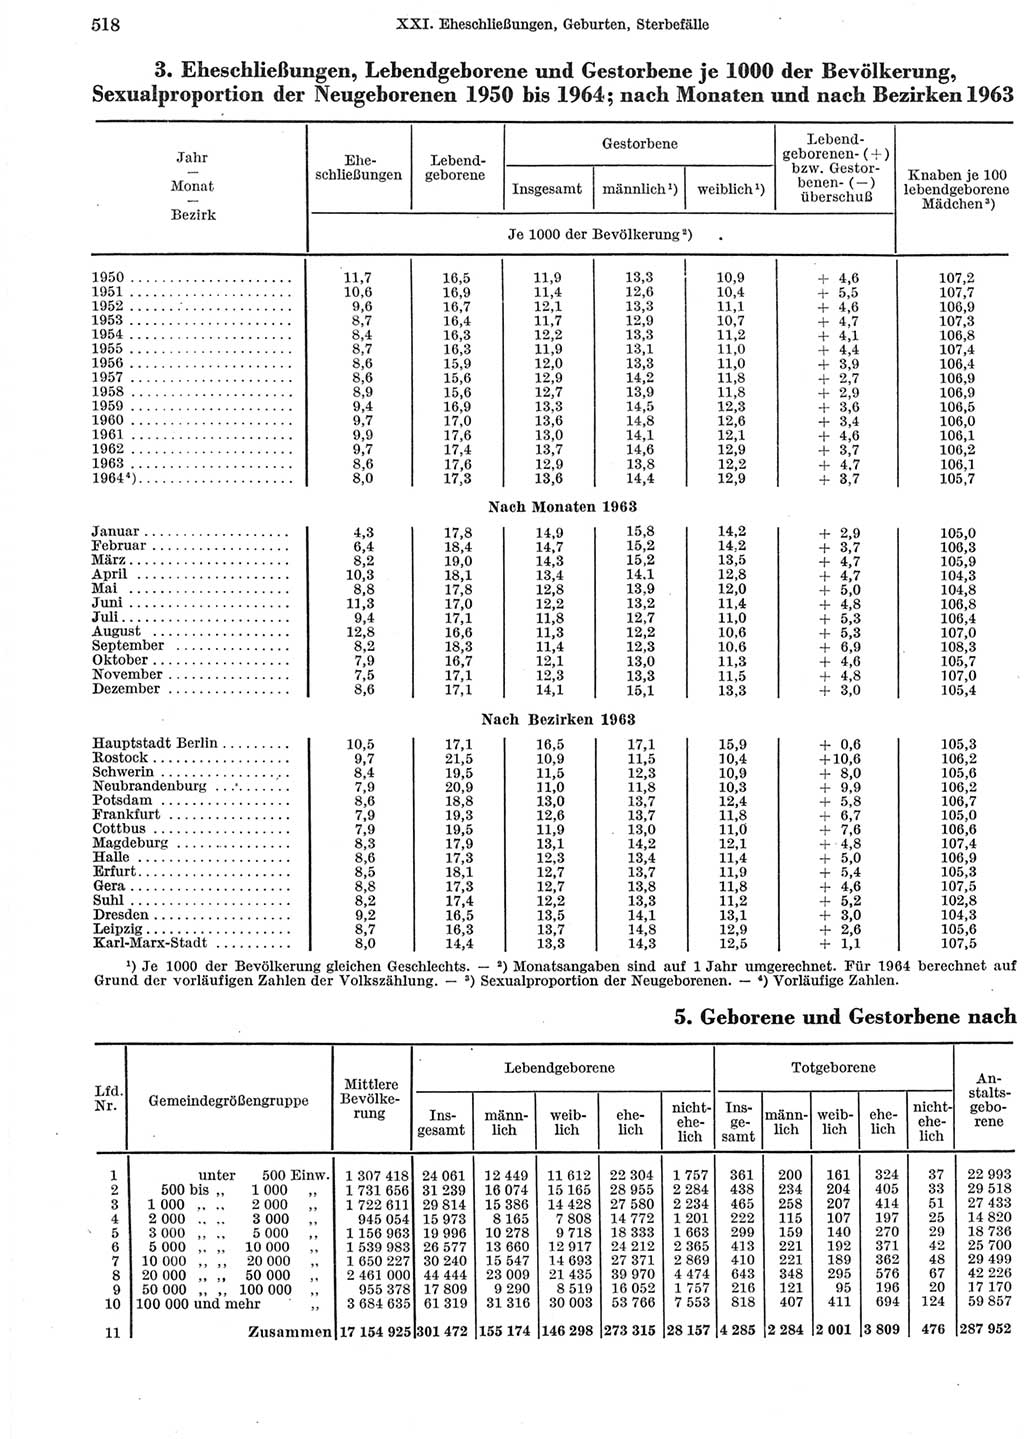 Statistisches Jahrbuch der Deutschen Demokratischen Republik (DDR) 1965, Seite 518 (Stat. Jb. DDR 1965, S. 518)